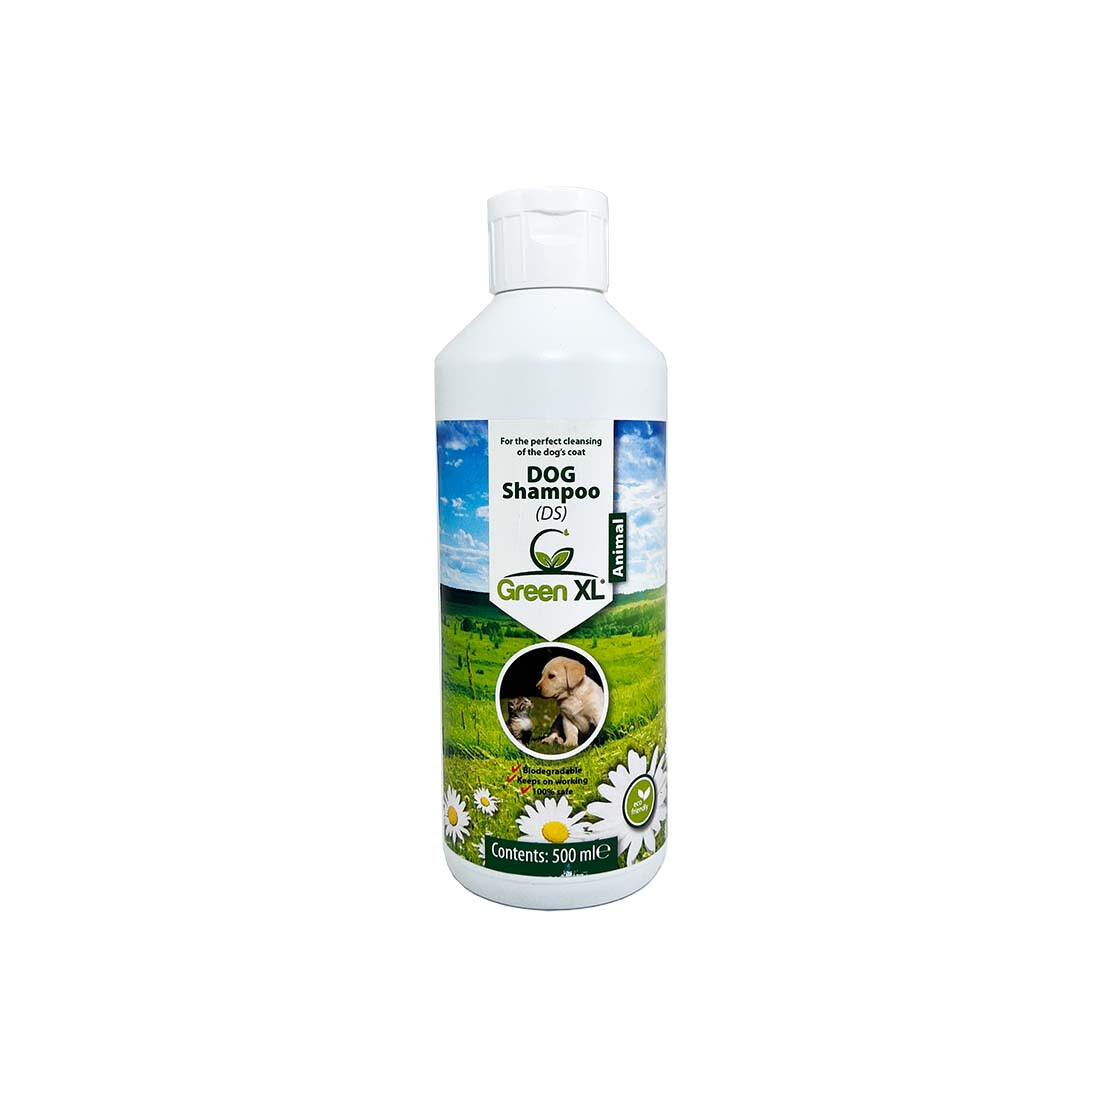 Selvforkælelse Pasture Nøgle FILTERCAPS: umweltfreundliches Hundeshampoo (probiotisch) kaufen, 10,